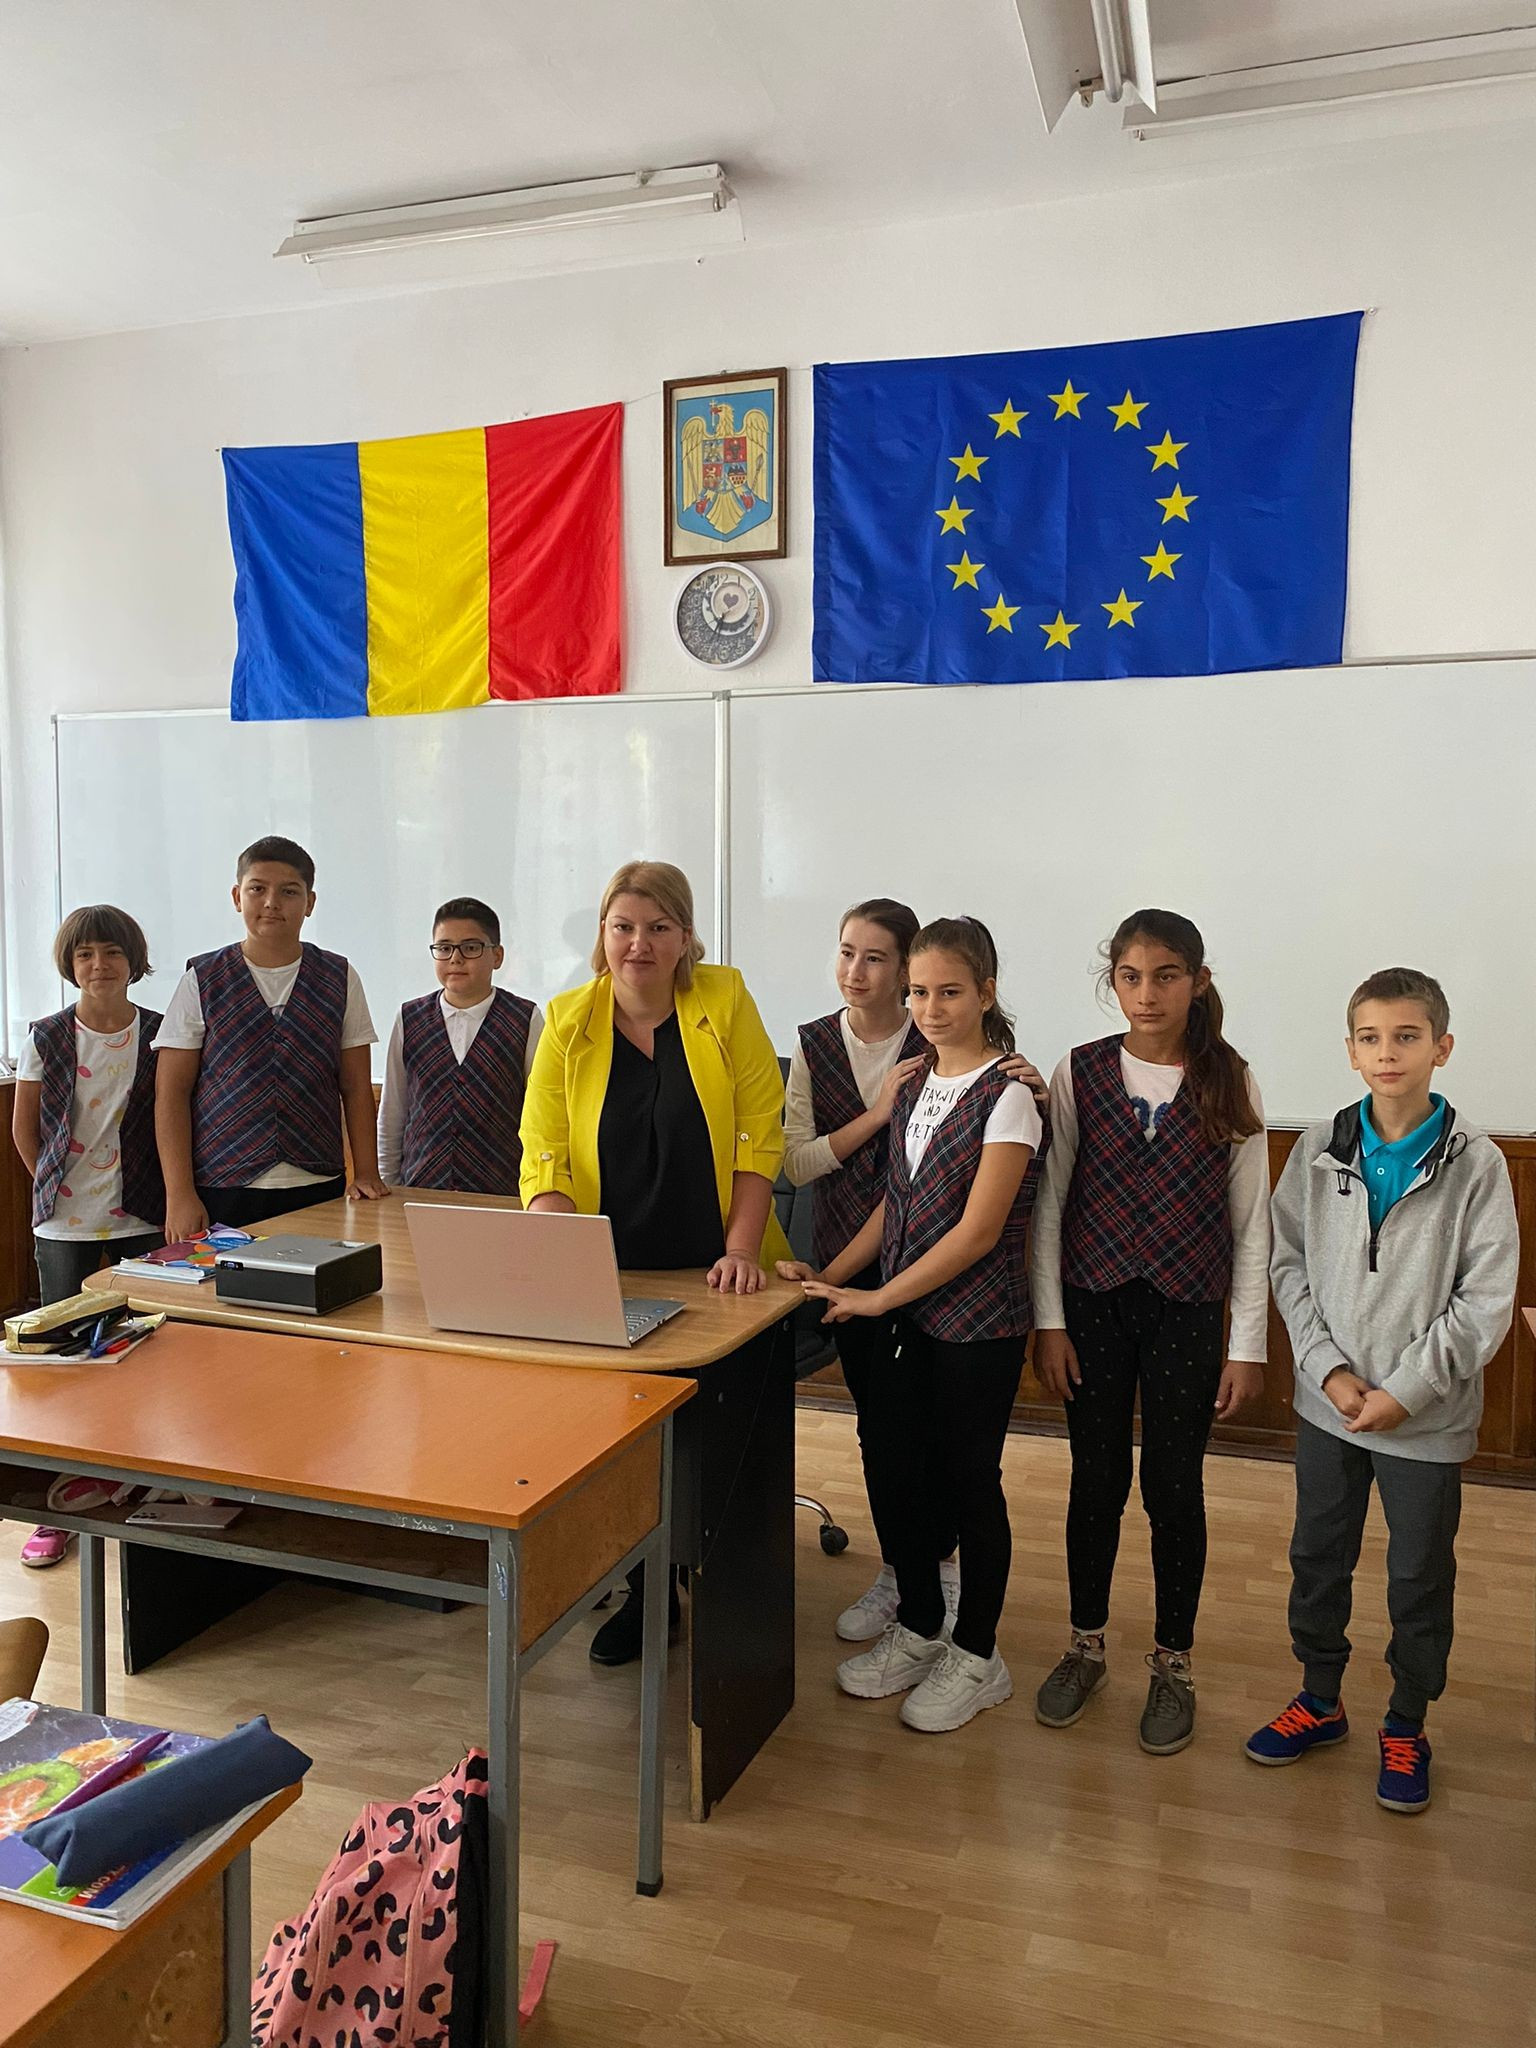 CEZ și Narada dotează 2 școli din județul Argeș cu echipamente digitale și spații de lectură 